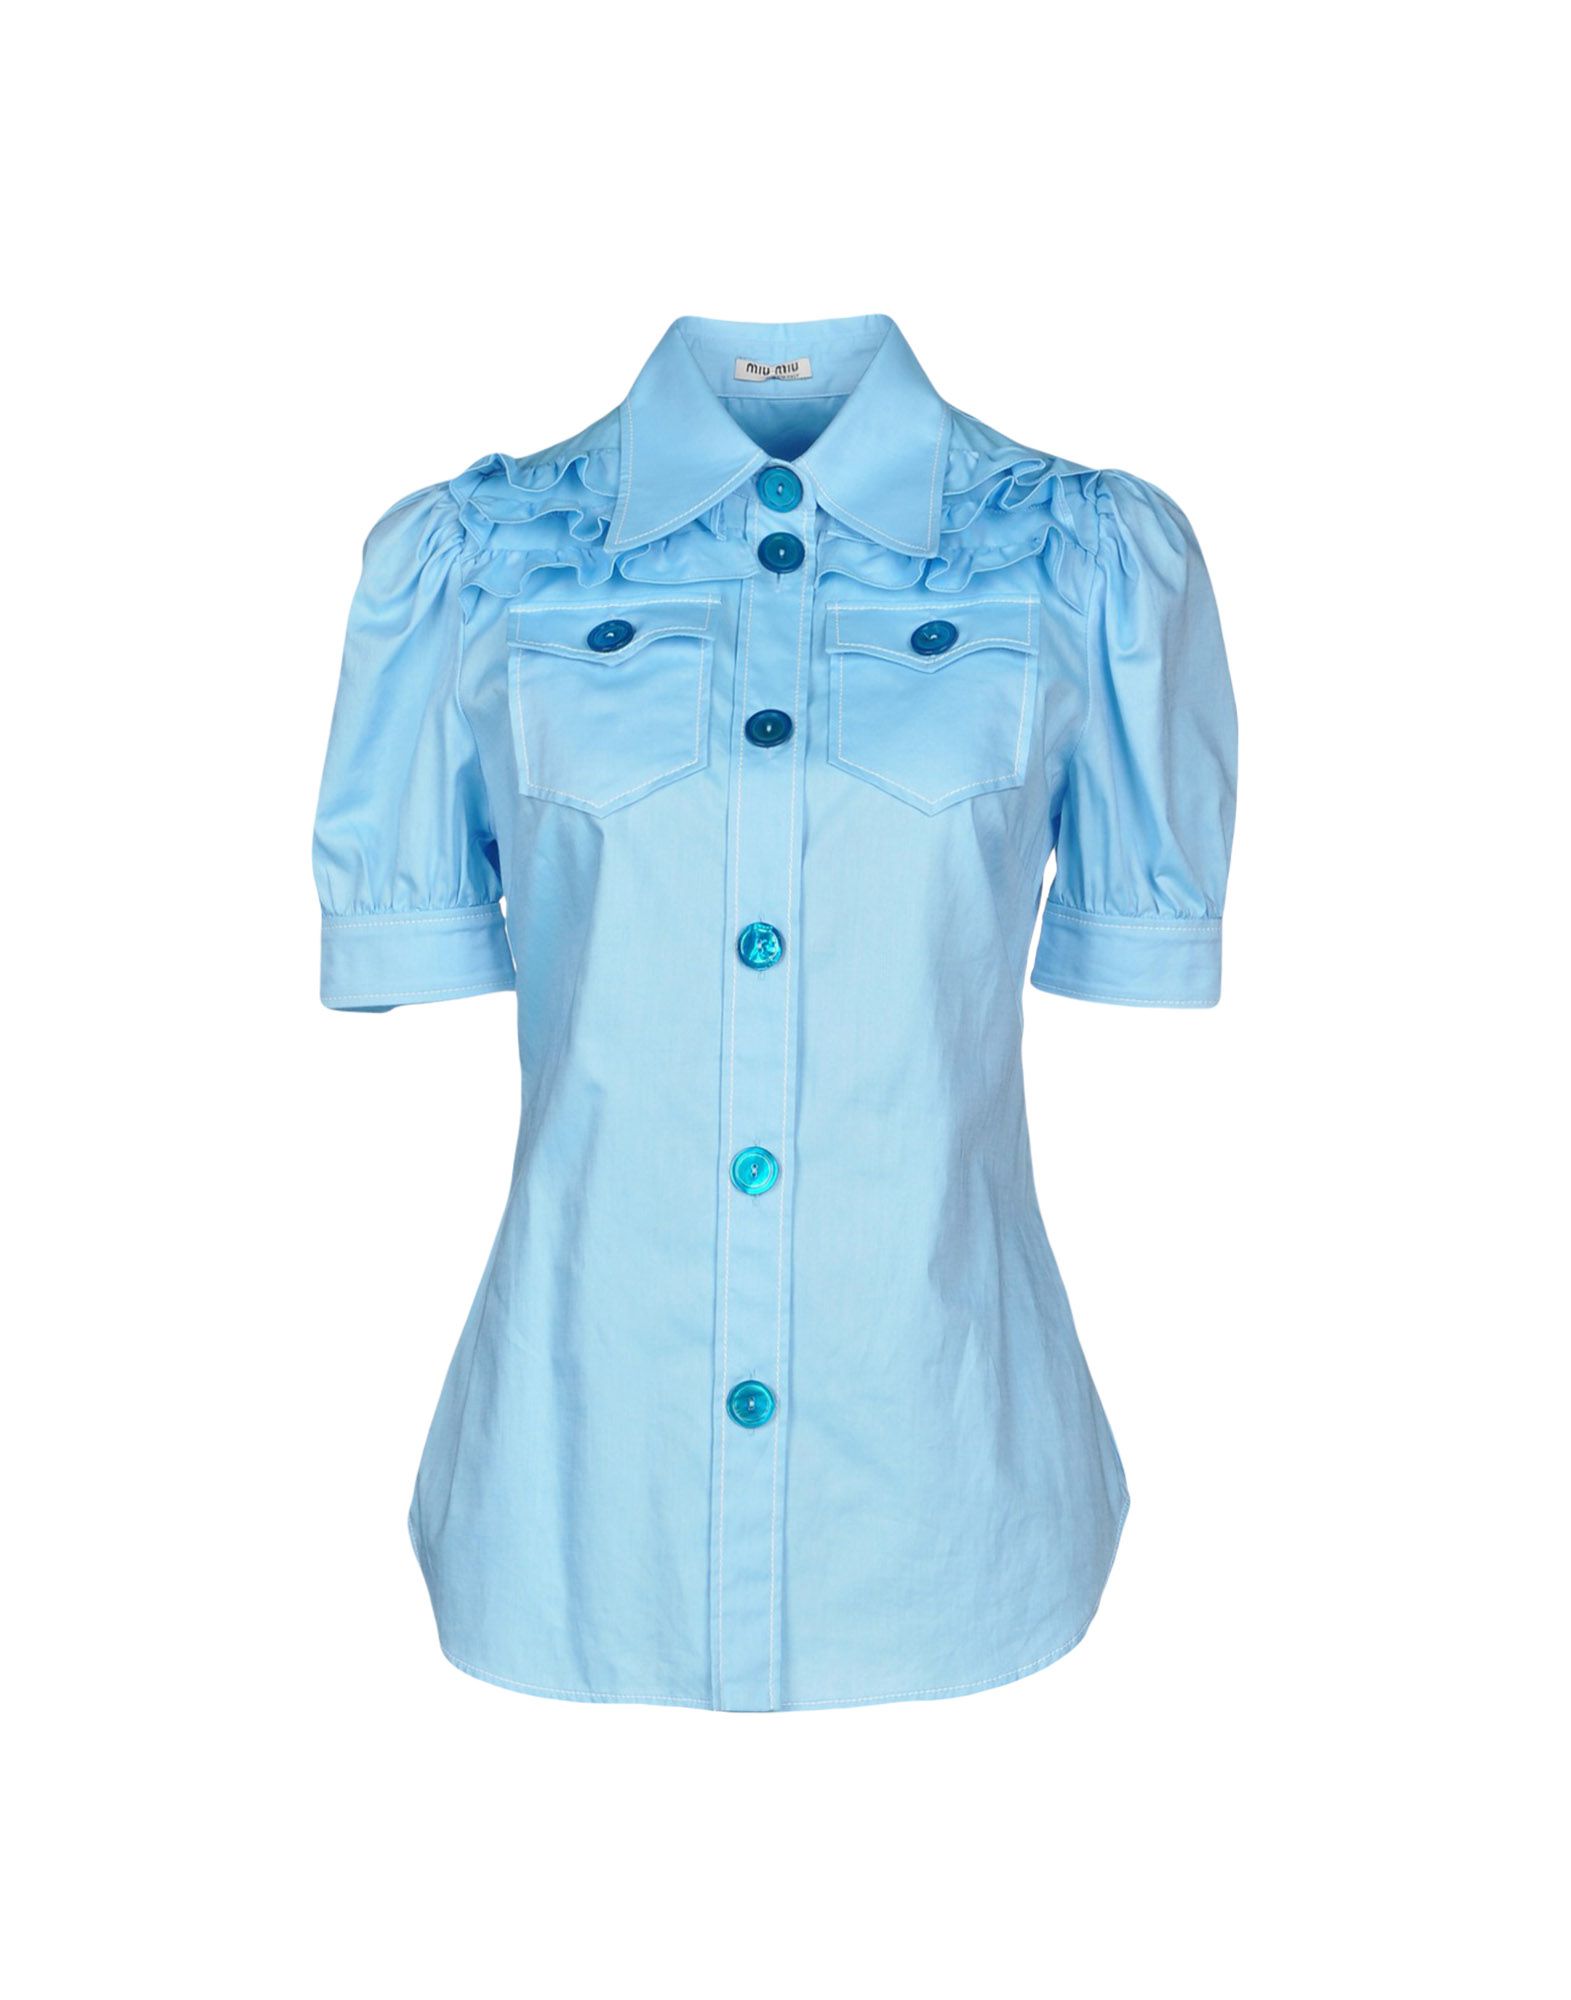 MIU MIU Solid color shirts & blouses,38747683SH 2